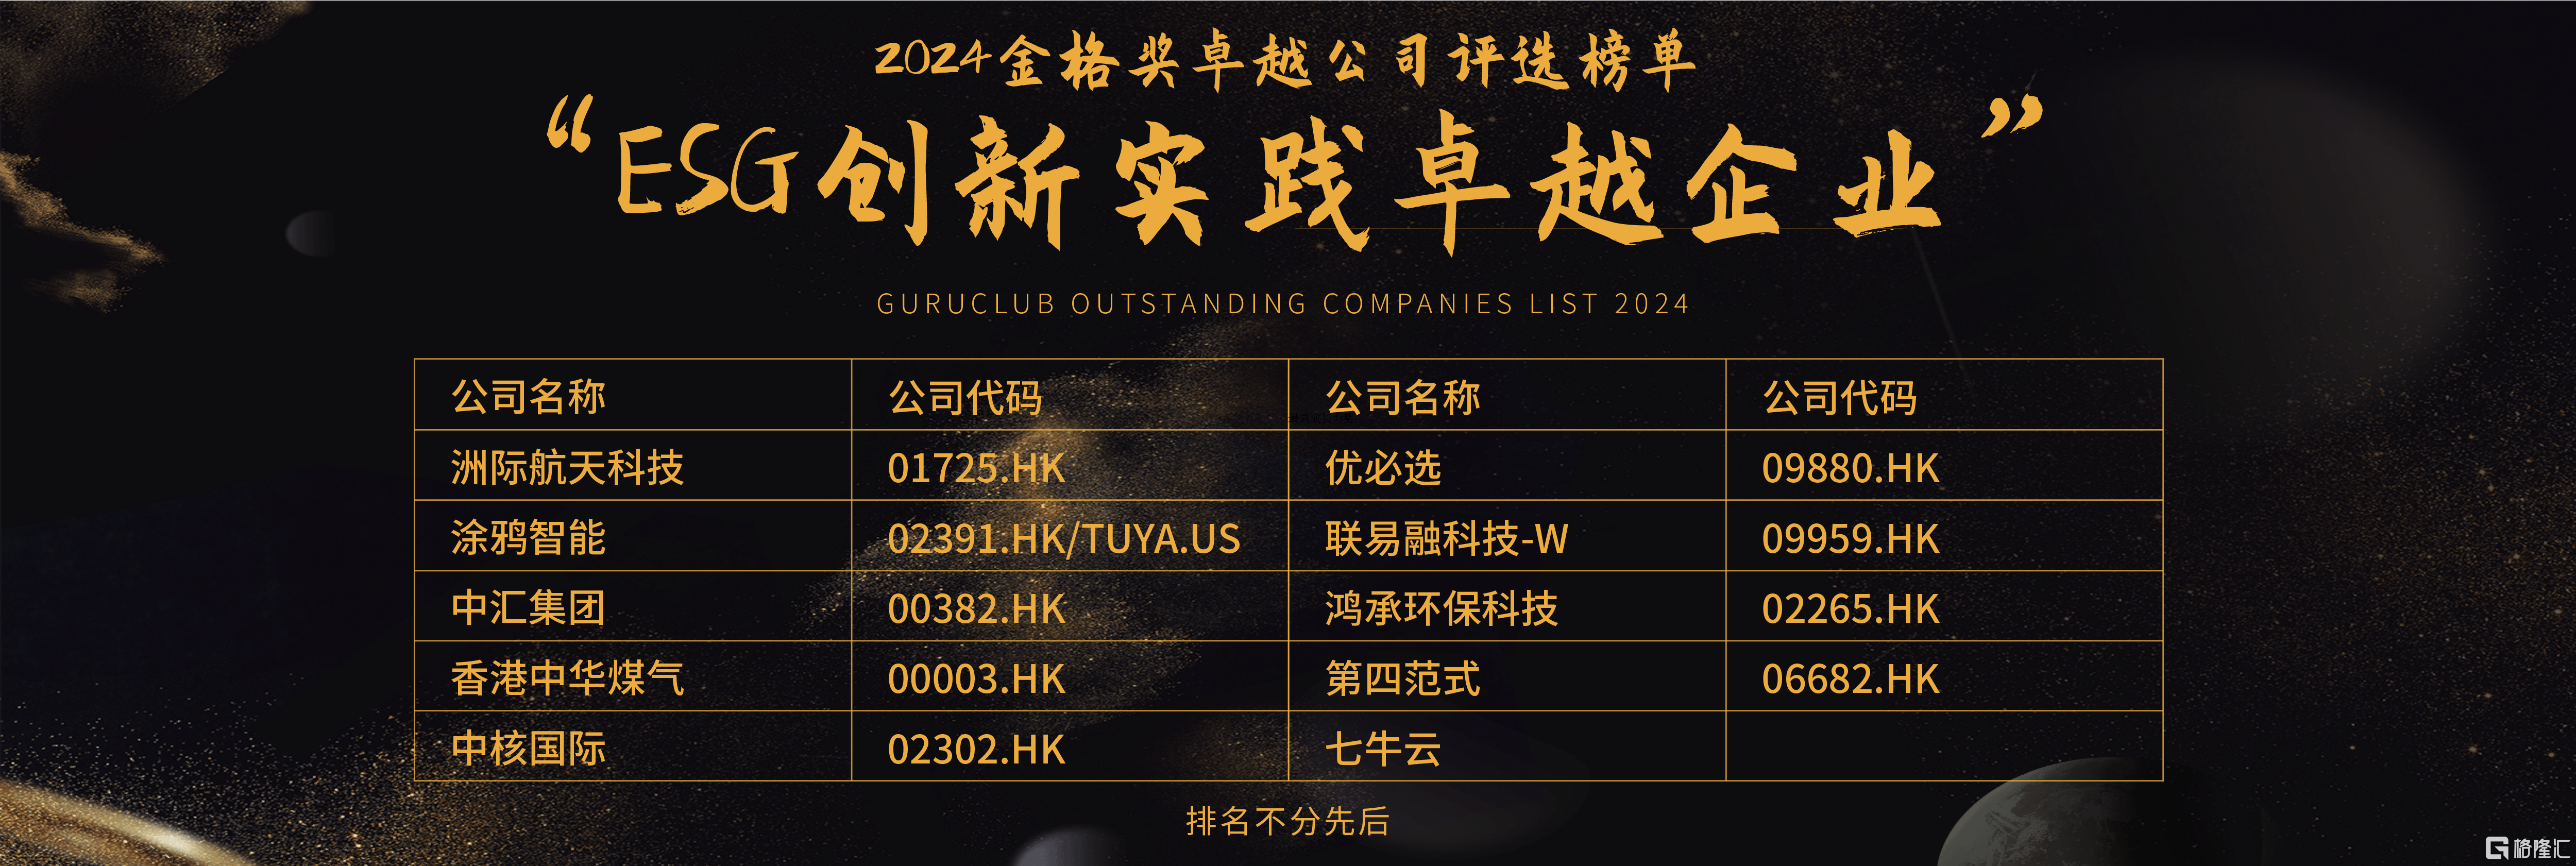 格隆汇·中期策略峰会·2024金格奖之“ESG创新实践卓越企业”奖项揭晓：第四范式(06682.HK)、四环医药(00460.HK)等20家企业上榜